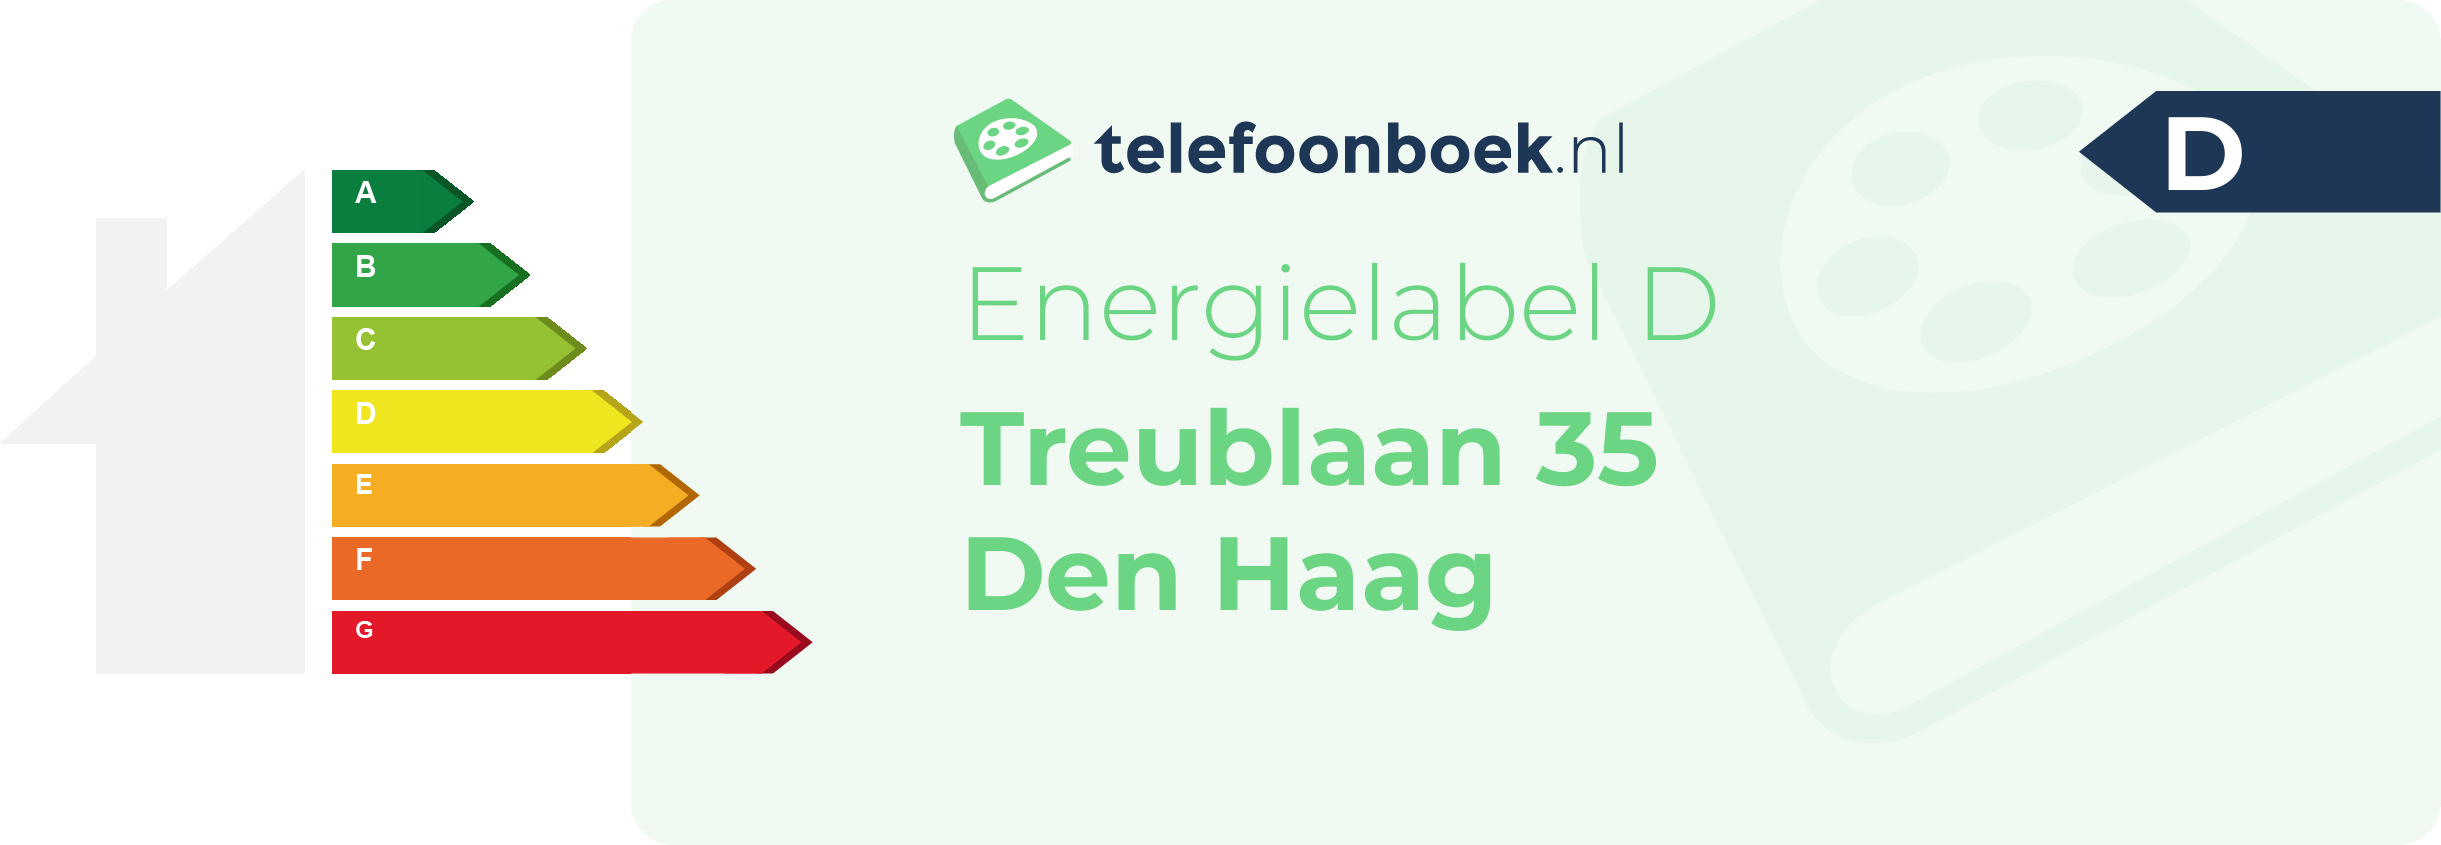 Energielabel Treublaan 35 Den Haag